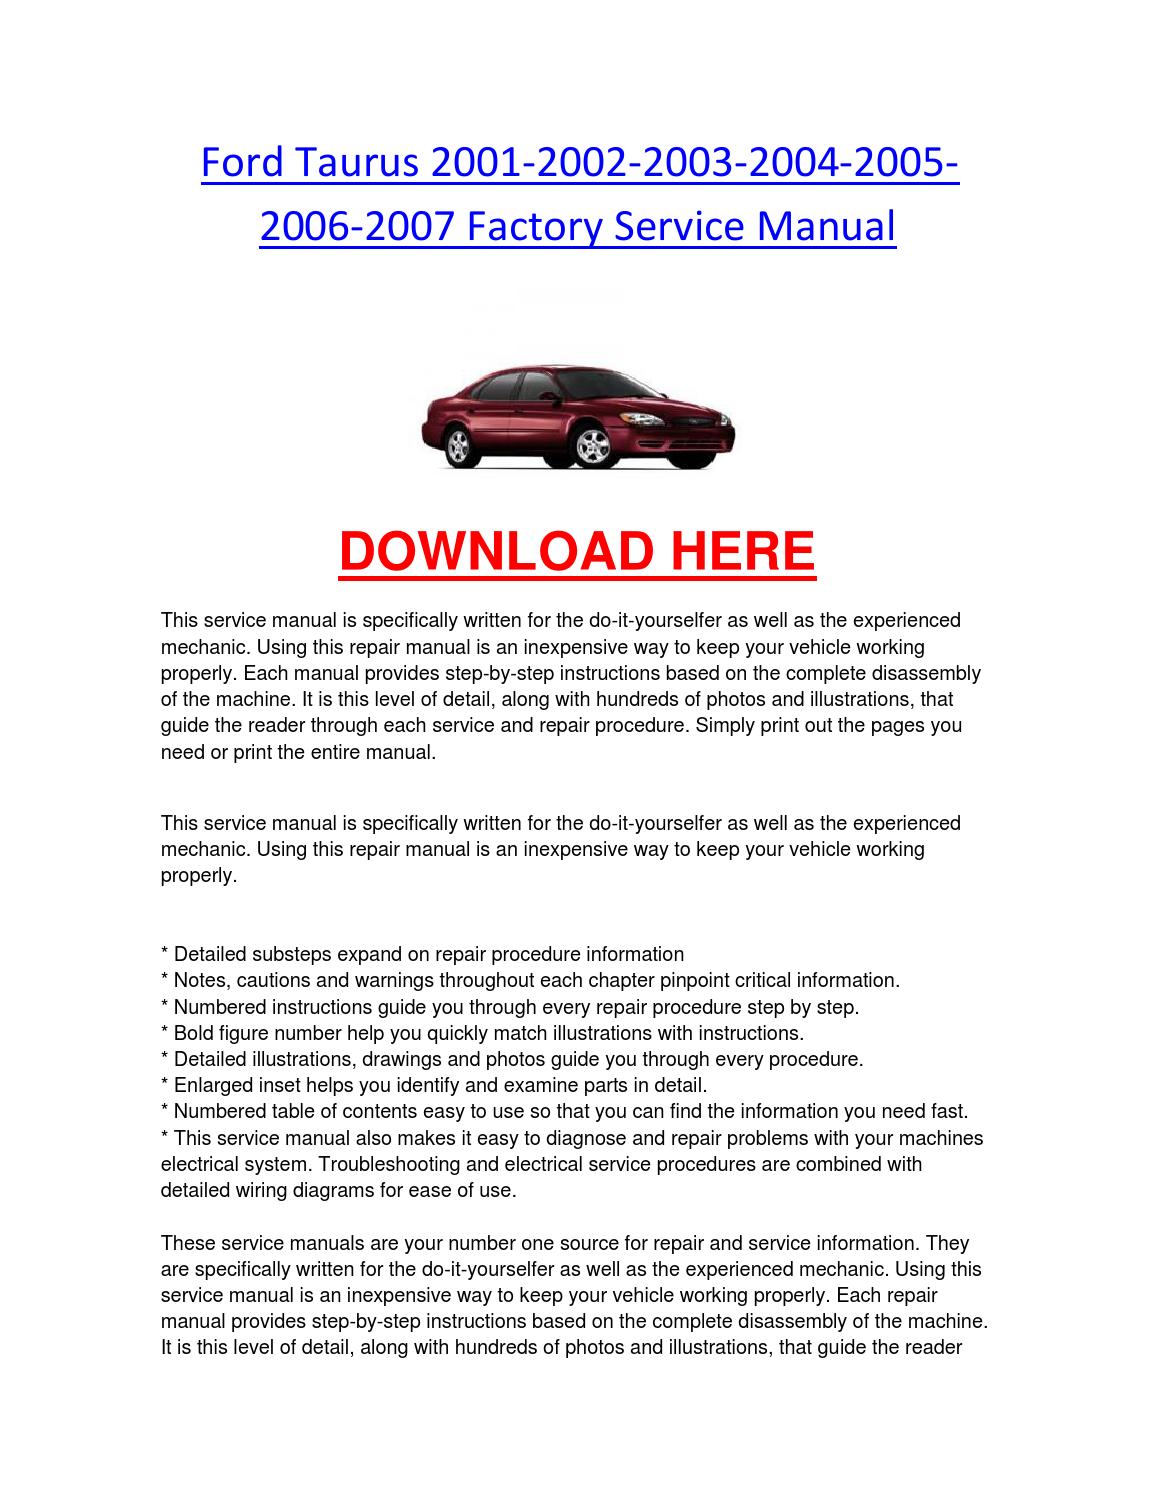 Ford taurus 2002 service manual download honda